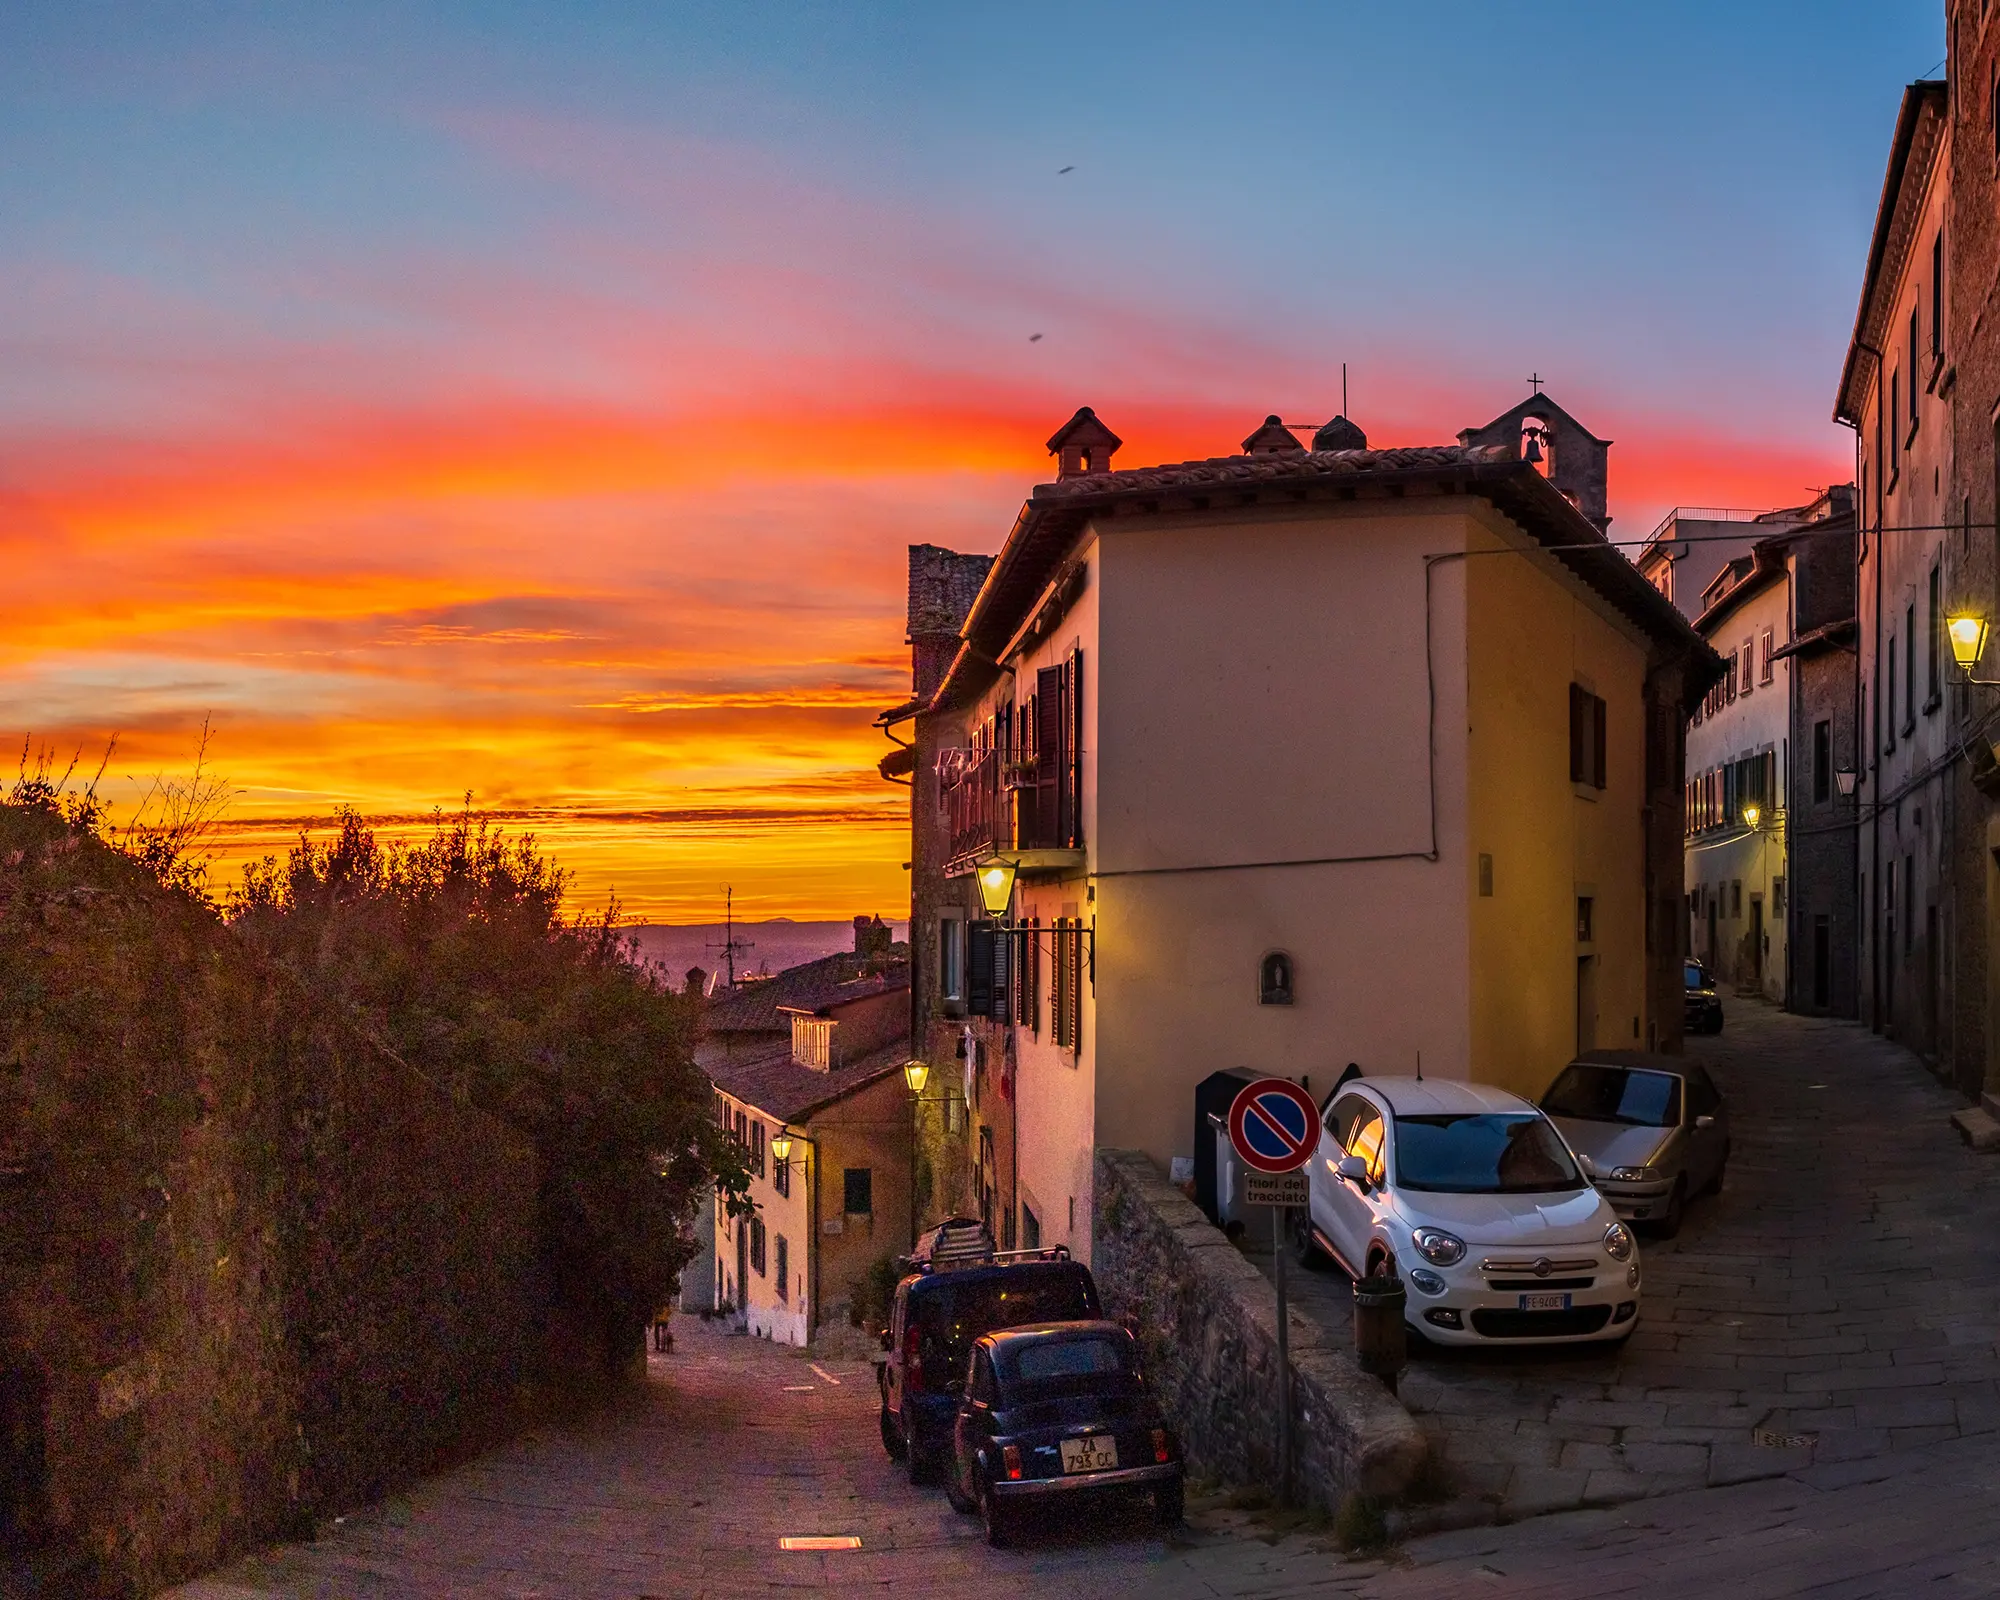 Sunset illuminates the Porta Berarda intersection in Cortona on November 6, 2022